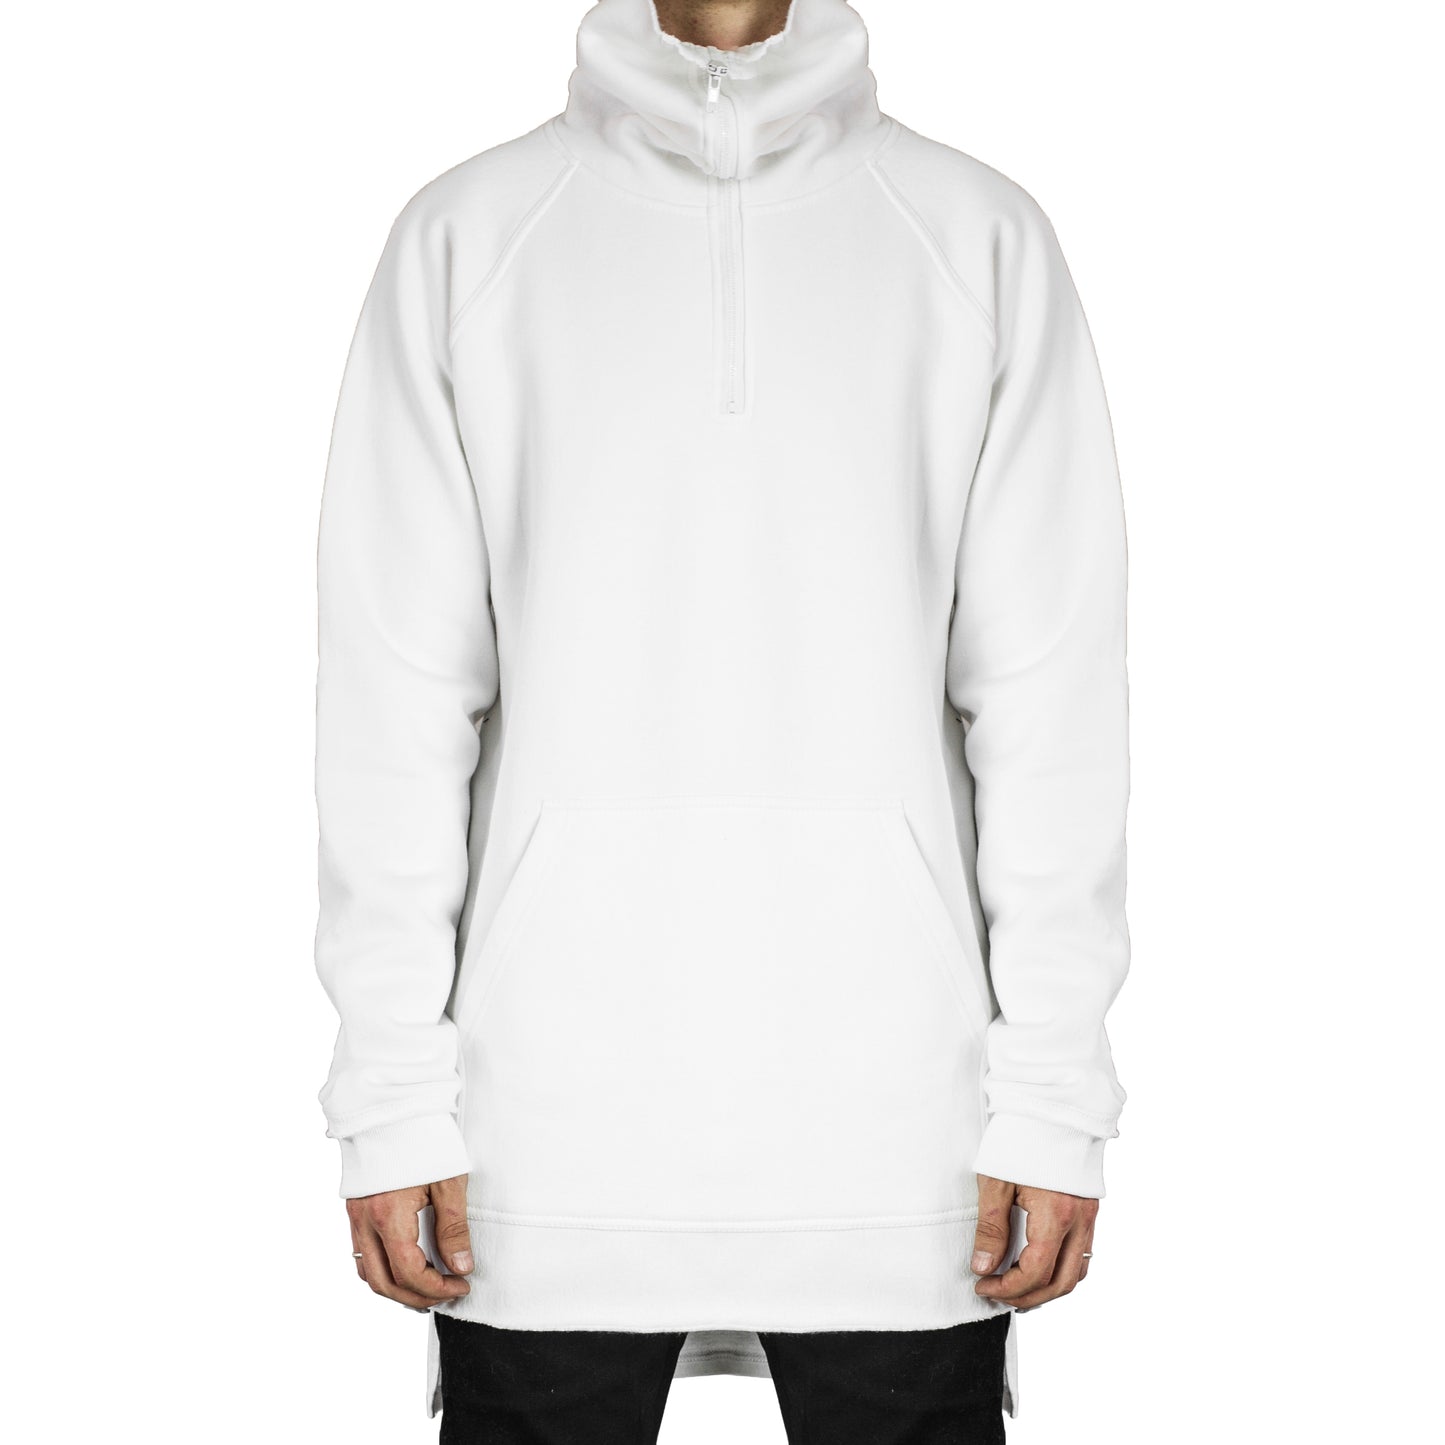 Zipup Cowl Sweatshirt : White